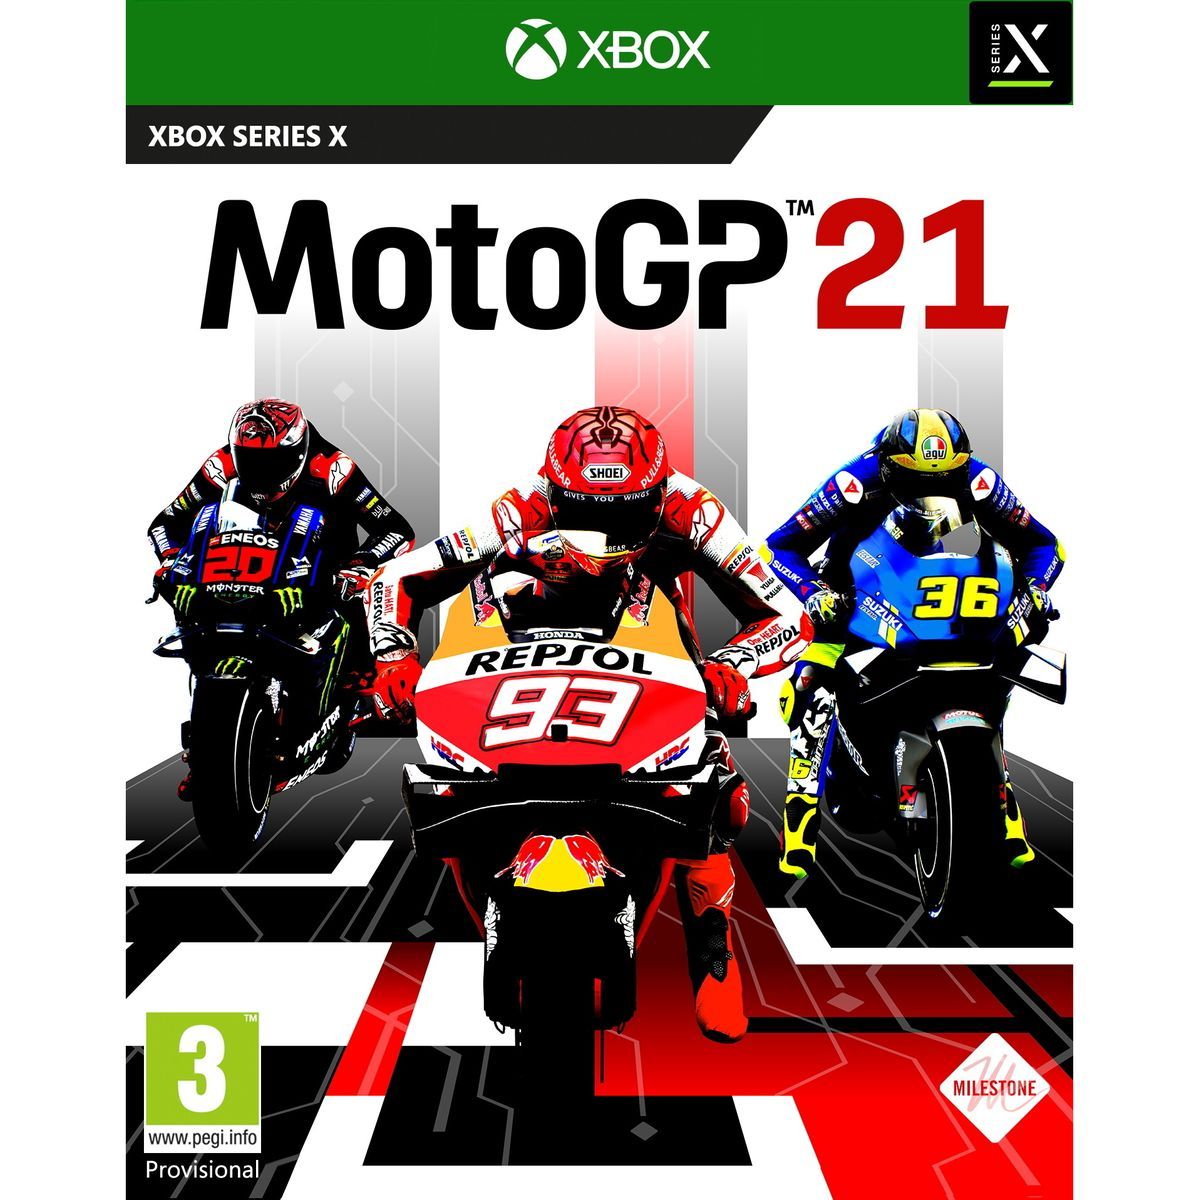 MotoGP 21 Xbox Series X